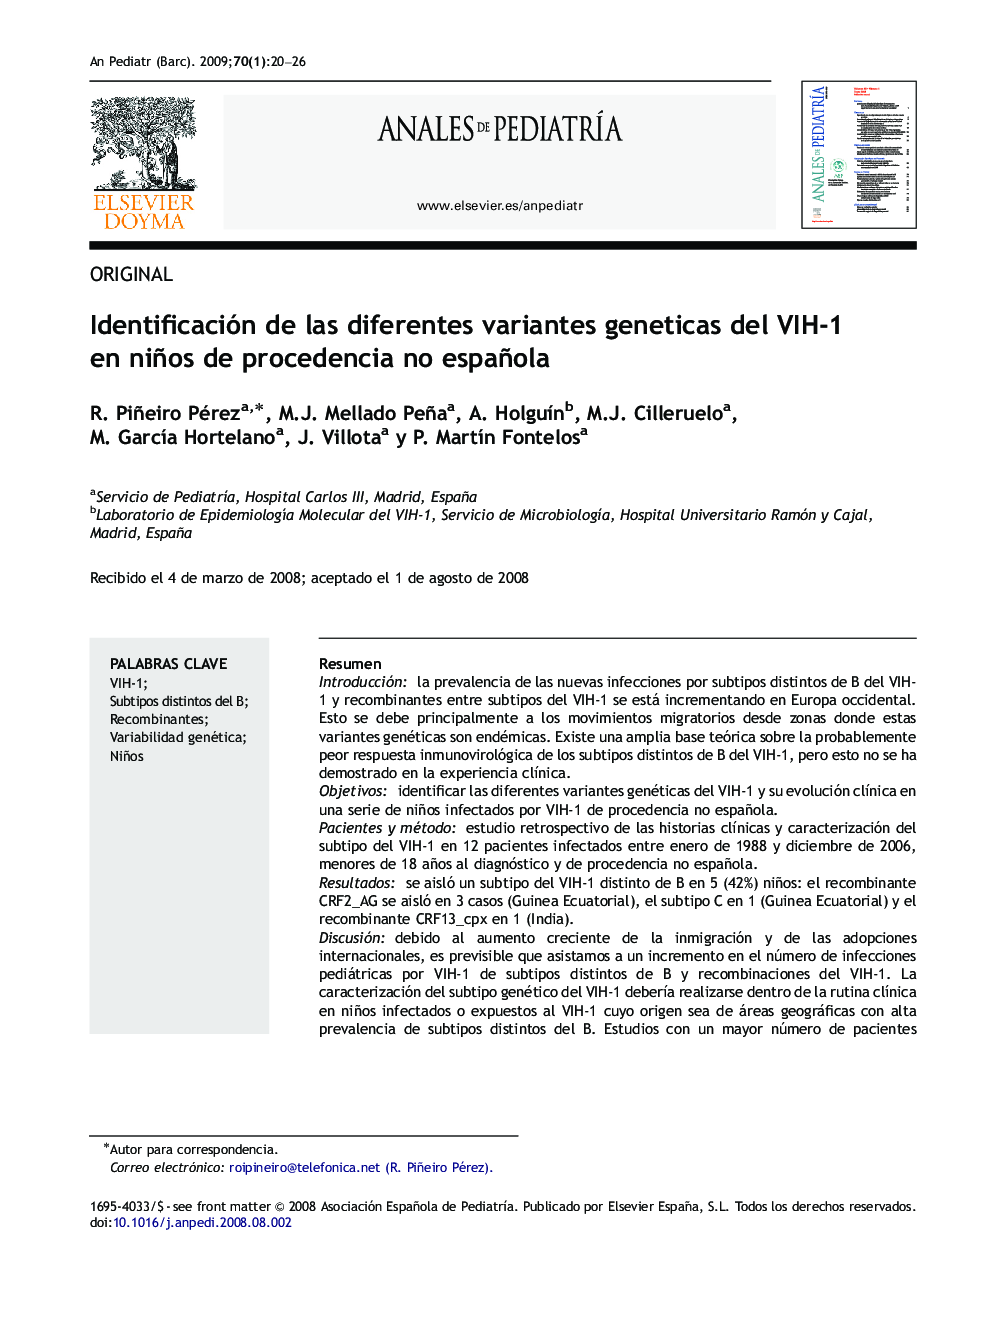 Identificación de las diferentes variantes geneticas del VIH-1 en niños de procedencia no española